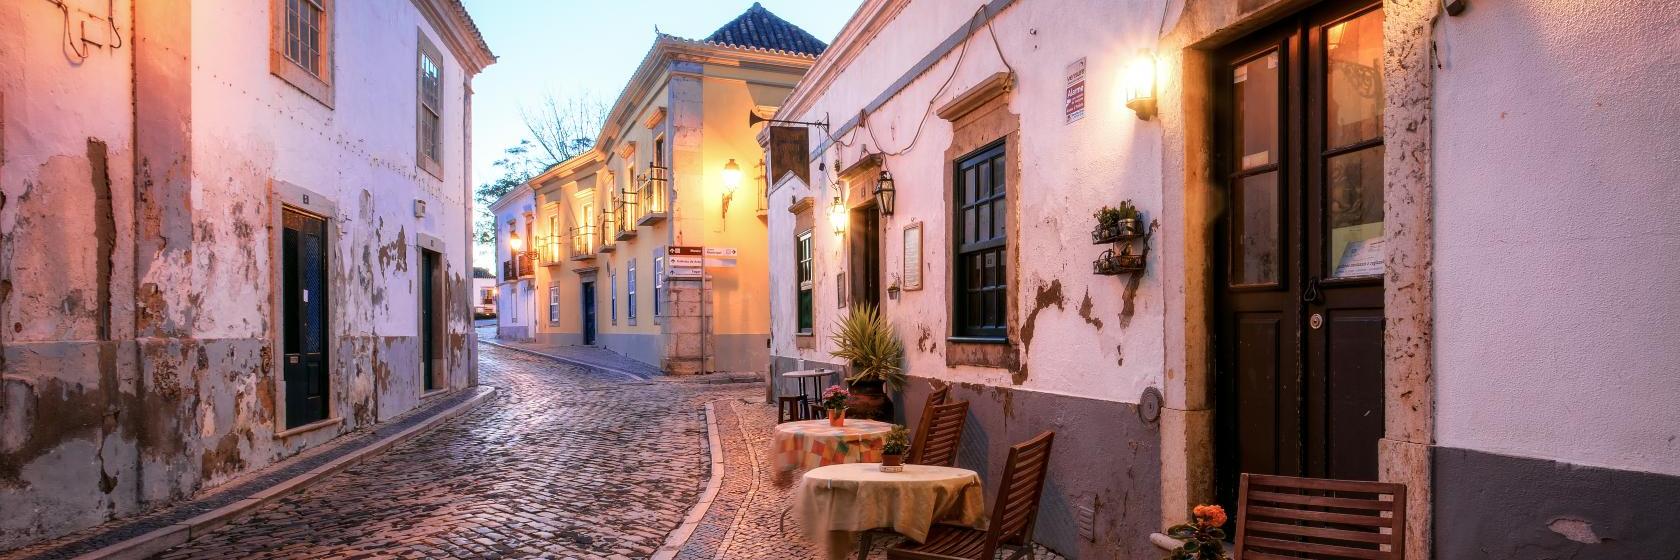 Os 10 Melhores Hotéis De Faro Portugal A Partir De R 154 9038